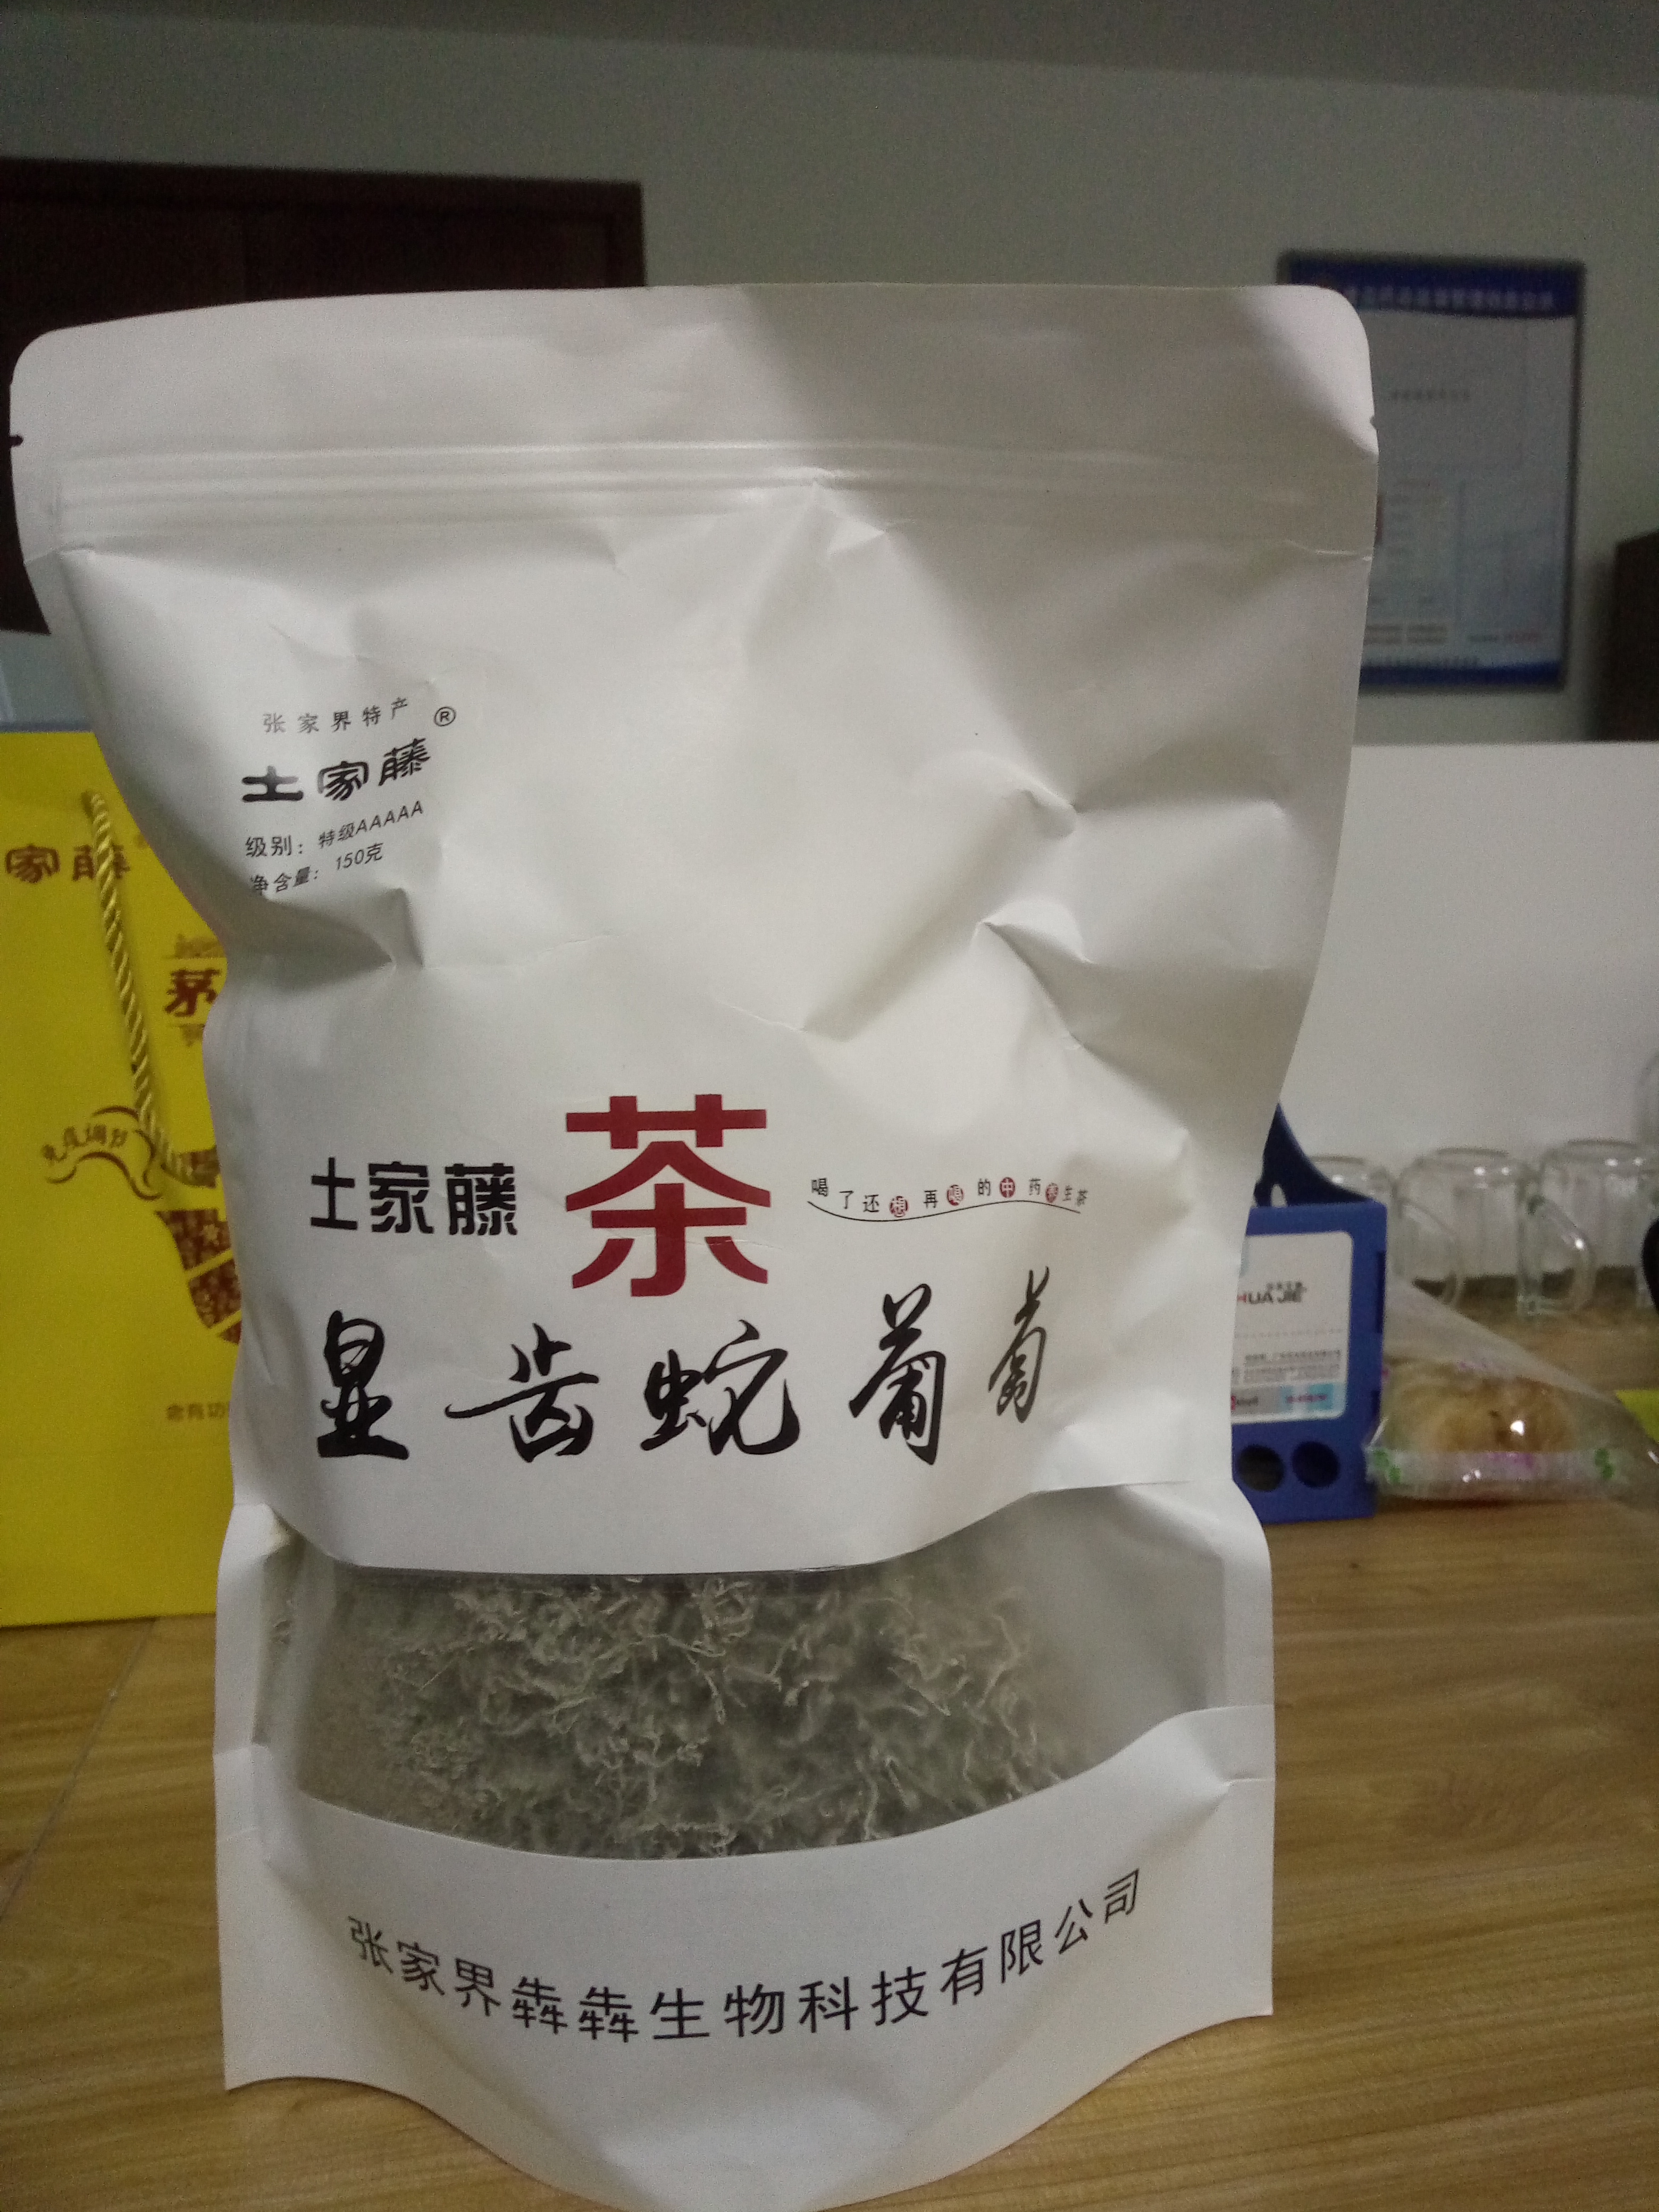 深圳市茅岩莓茶白茶莓茶厂家茅岩莓茶龙须茶神仙茶长寿茶 茅岩莓茶白茶莓茶